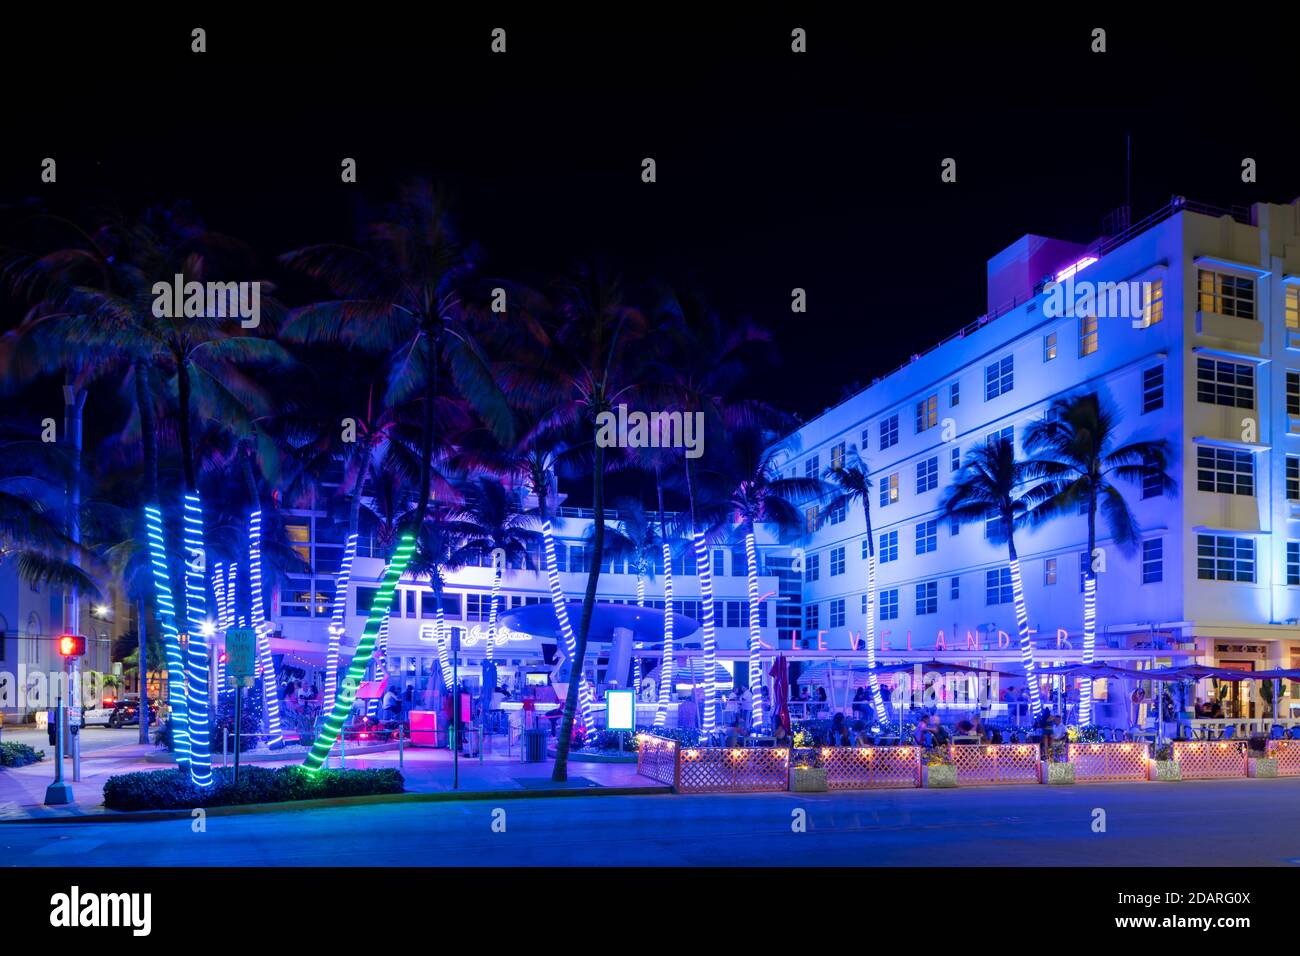 MIAMI BEACH, FL, Etats-Unis - 13 NOVEMBRE 2020: Bleu fluo Clevelander Hôtel et pub Ocean Drive photo de nuit Banque D'Images